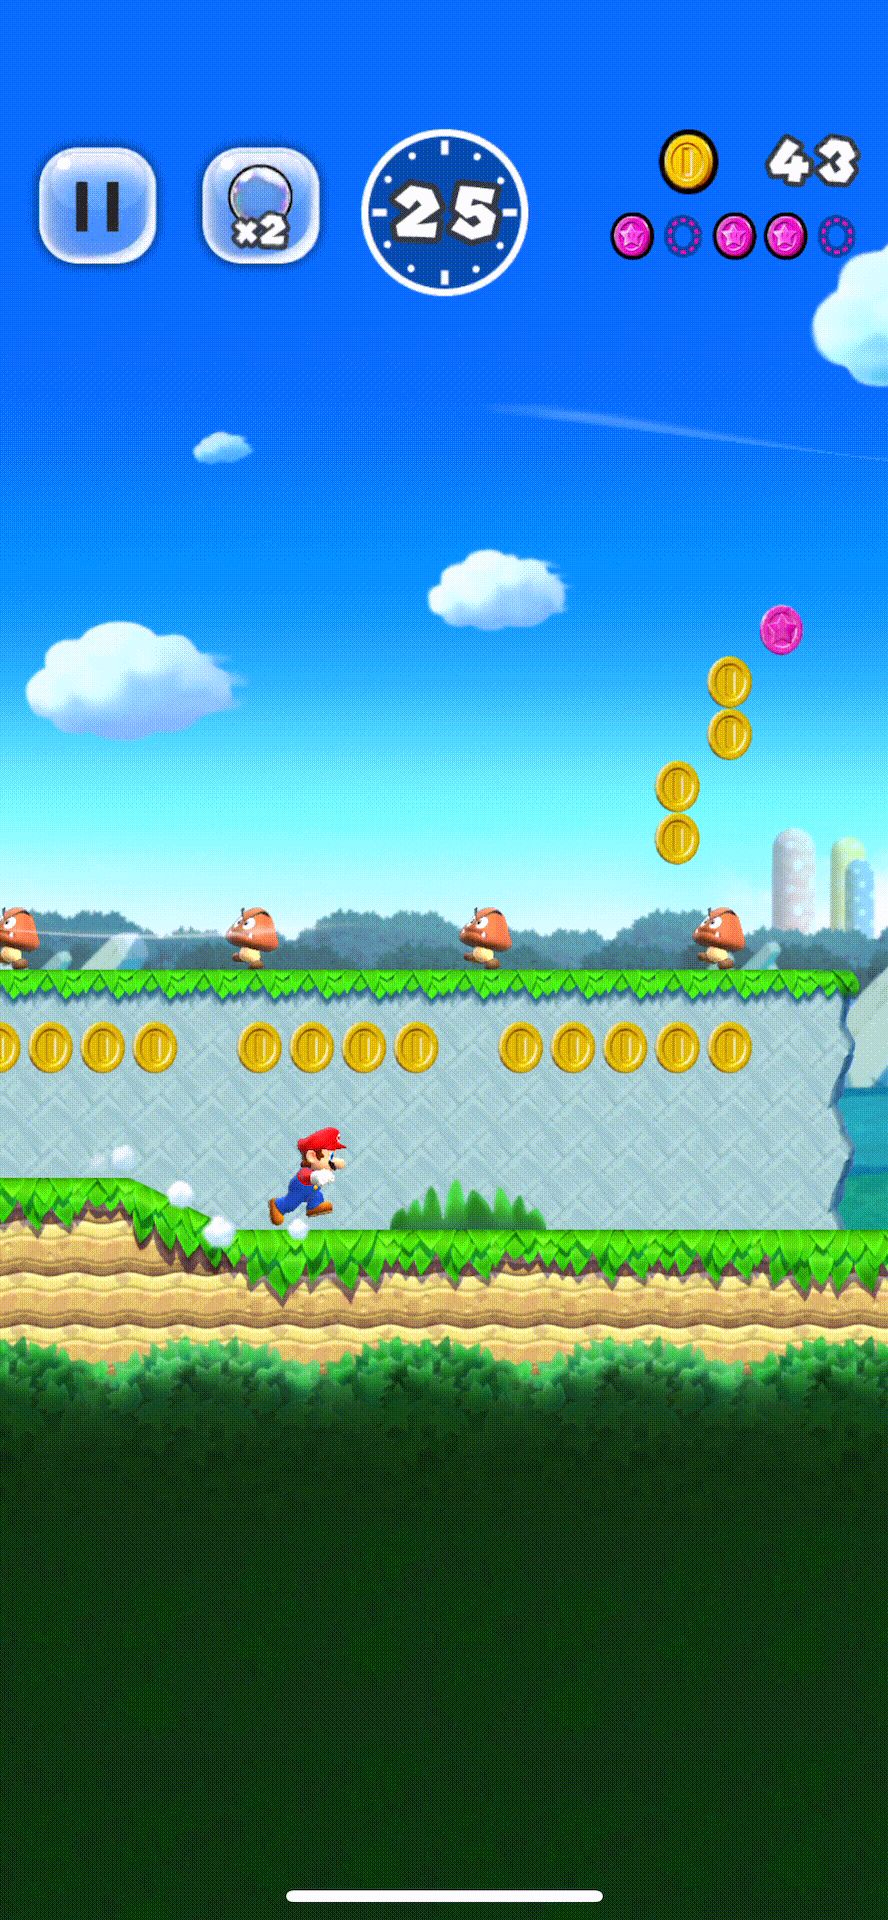 Super Mario Run Gameplay 2 (Pause Mechanic)